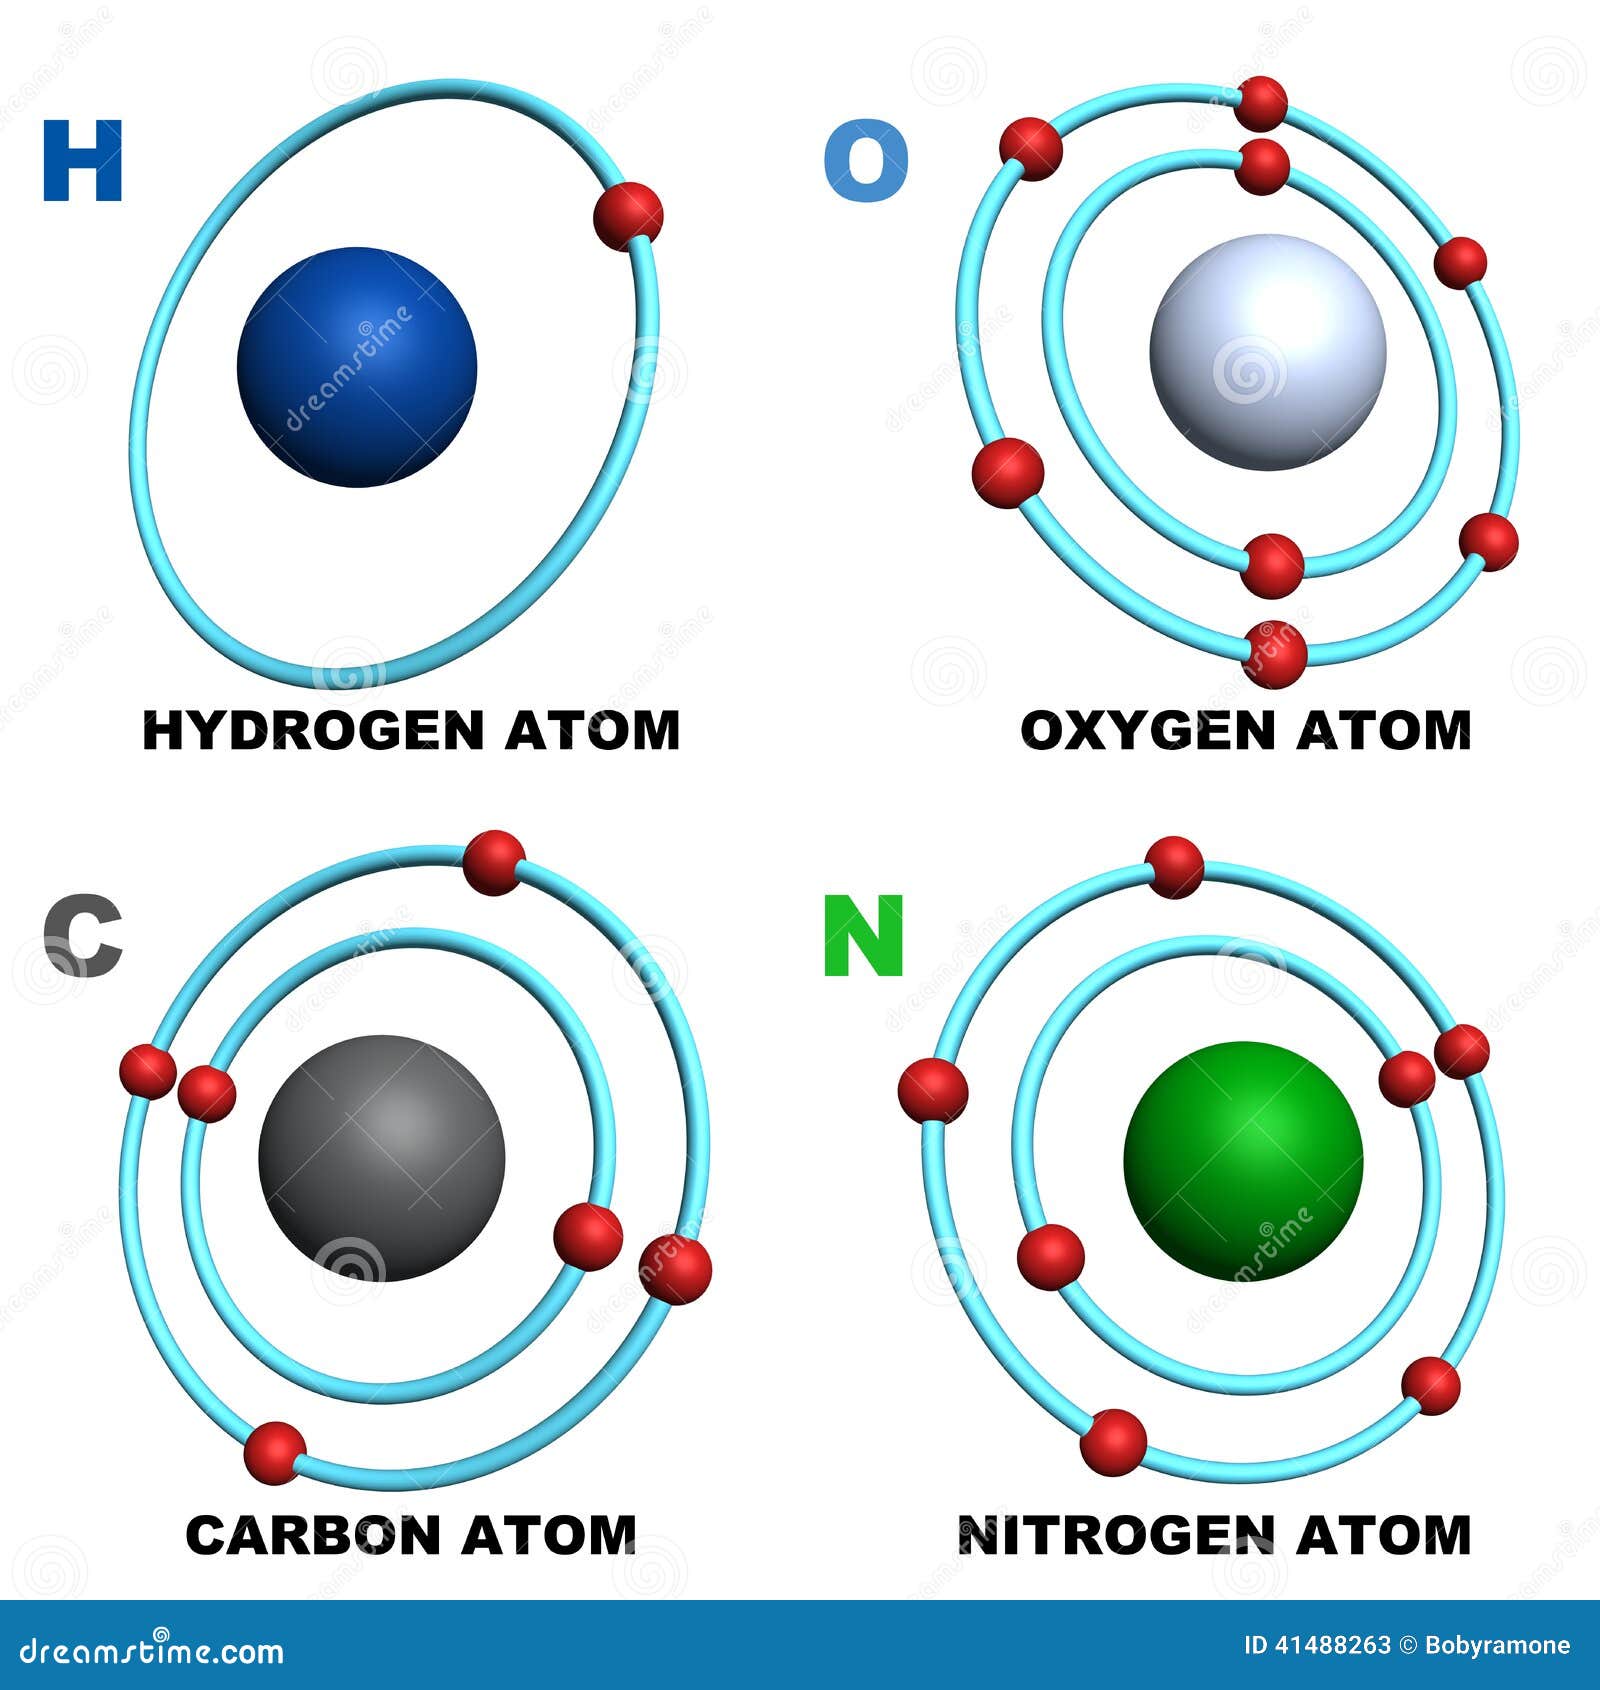 Азотисто водородную. Атомов азота атомов водорода атомов кислорода. Модель строения атома азота. Углерод водород кислород и азот. Модель молекулы кислорода.